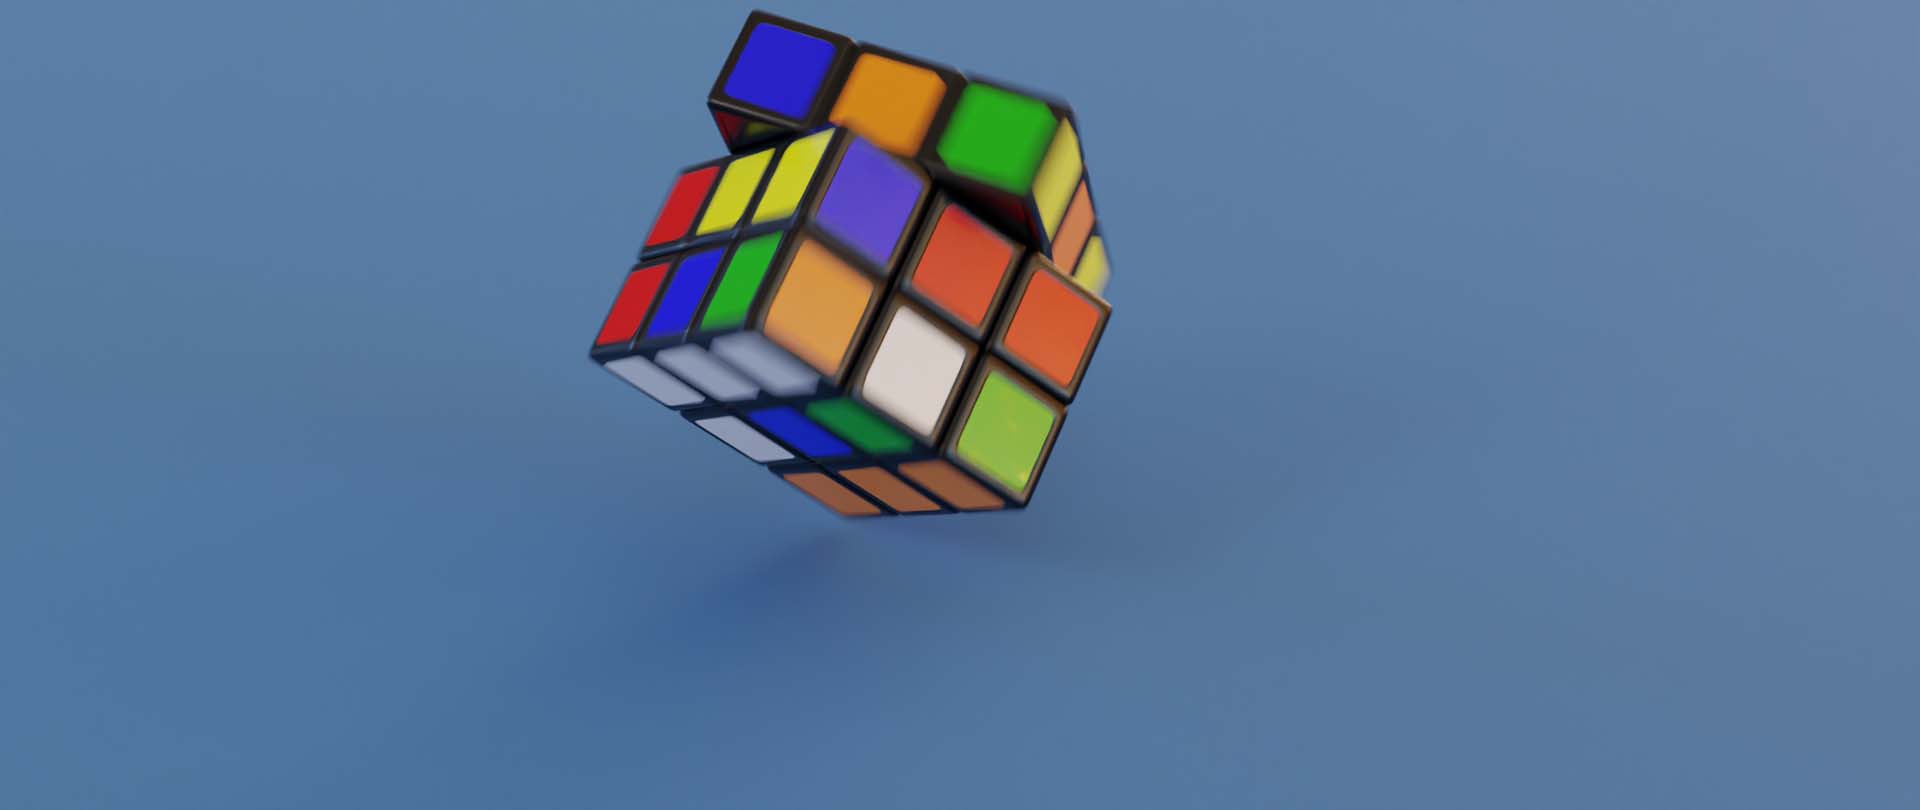 rubik's cube blender